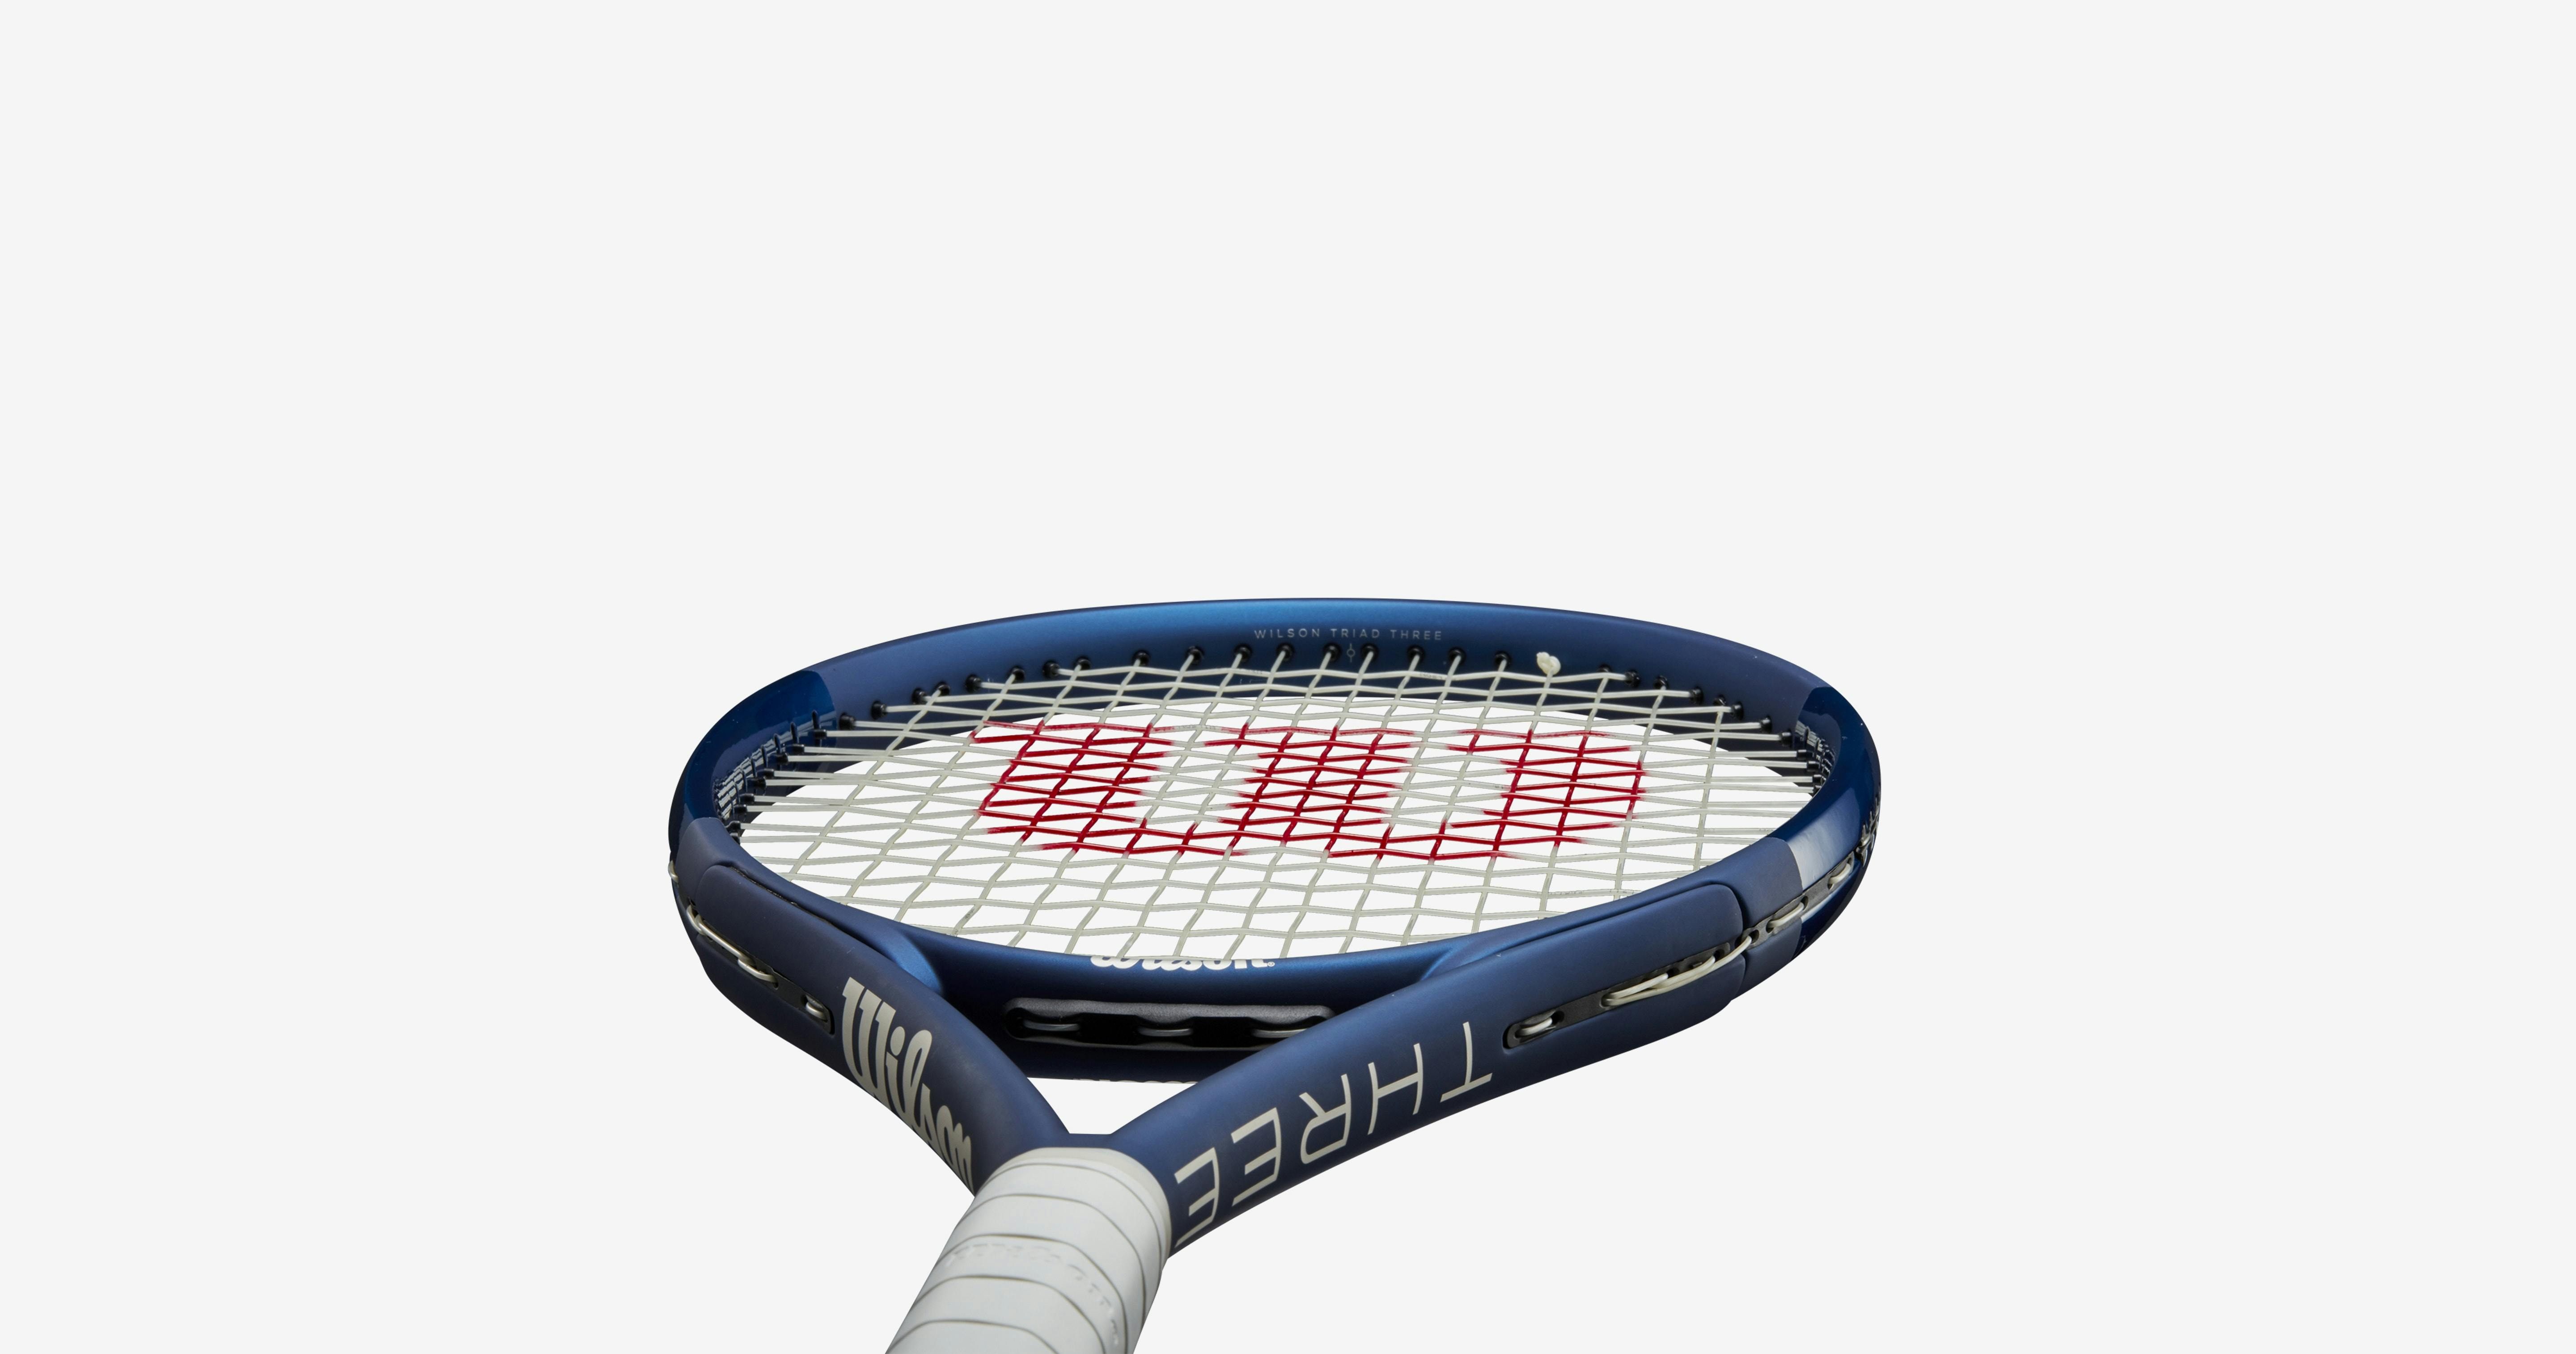 Wilson Triad Three Racquet · Unstrung